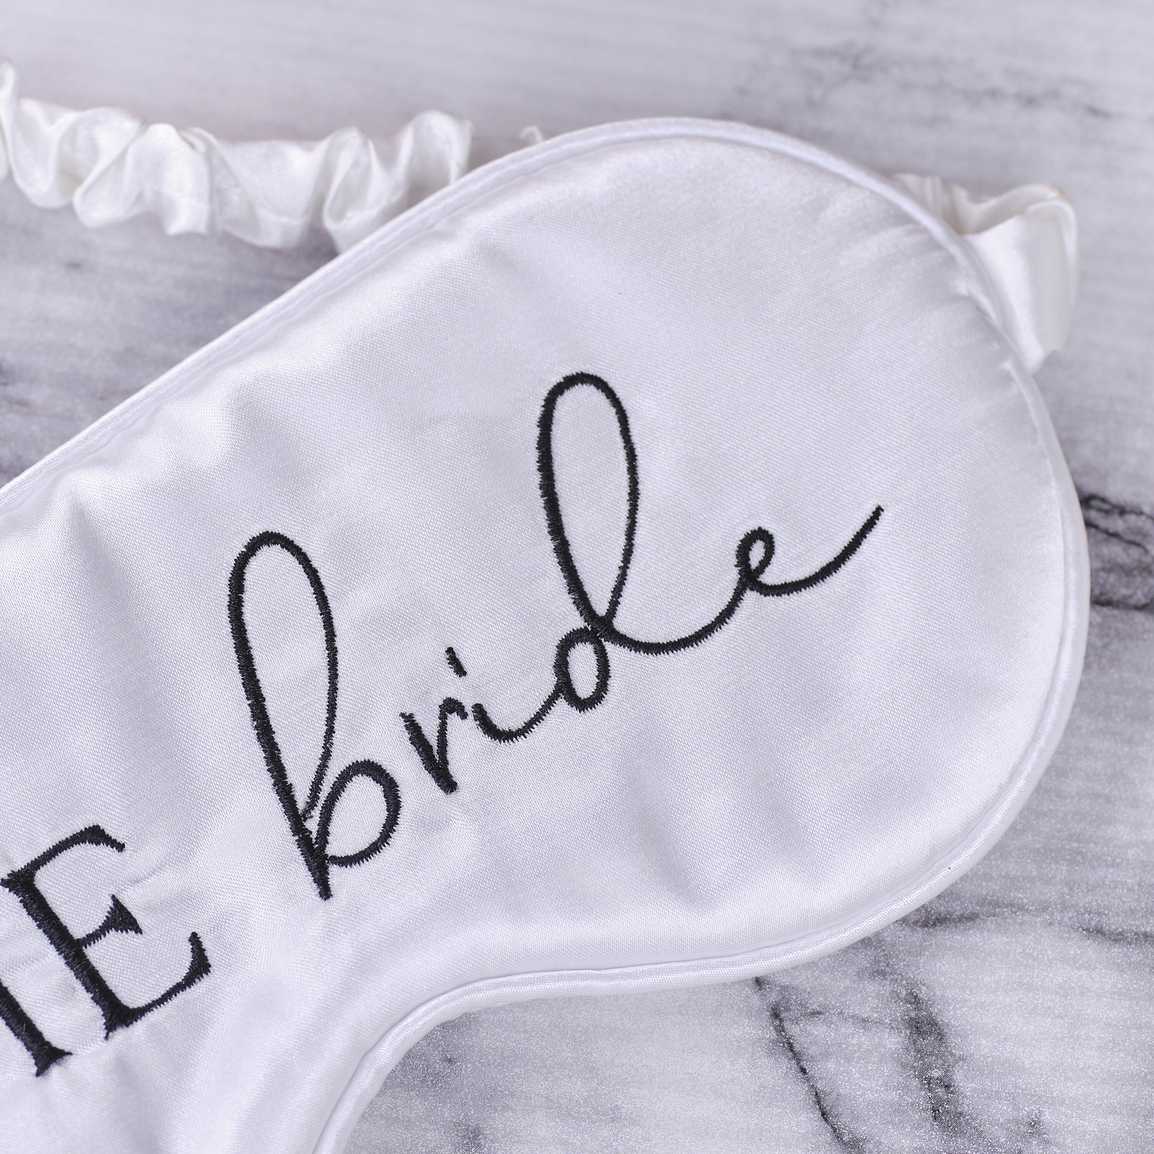 'The Bride' White Satin Sleep Mask